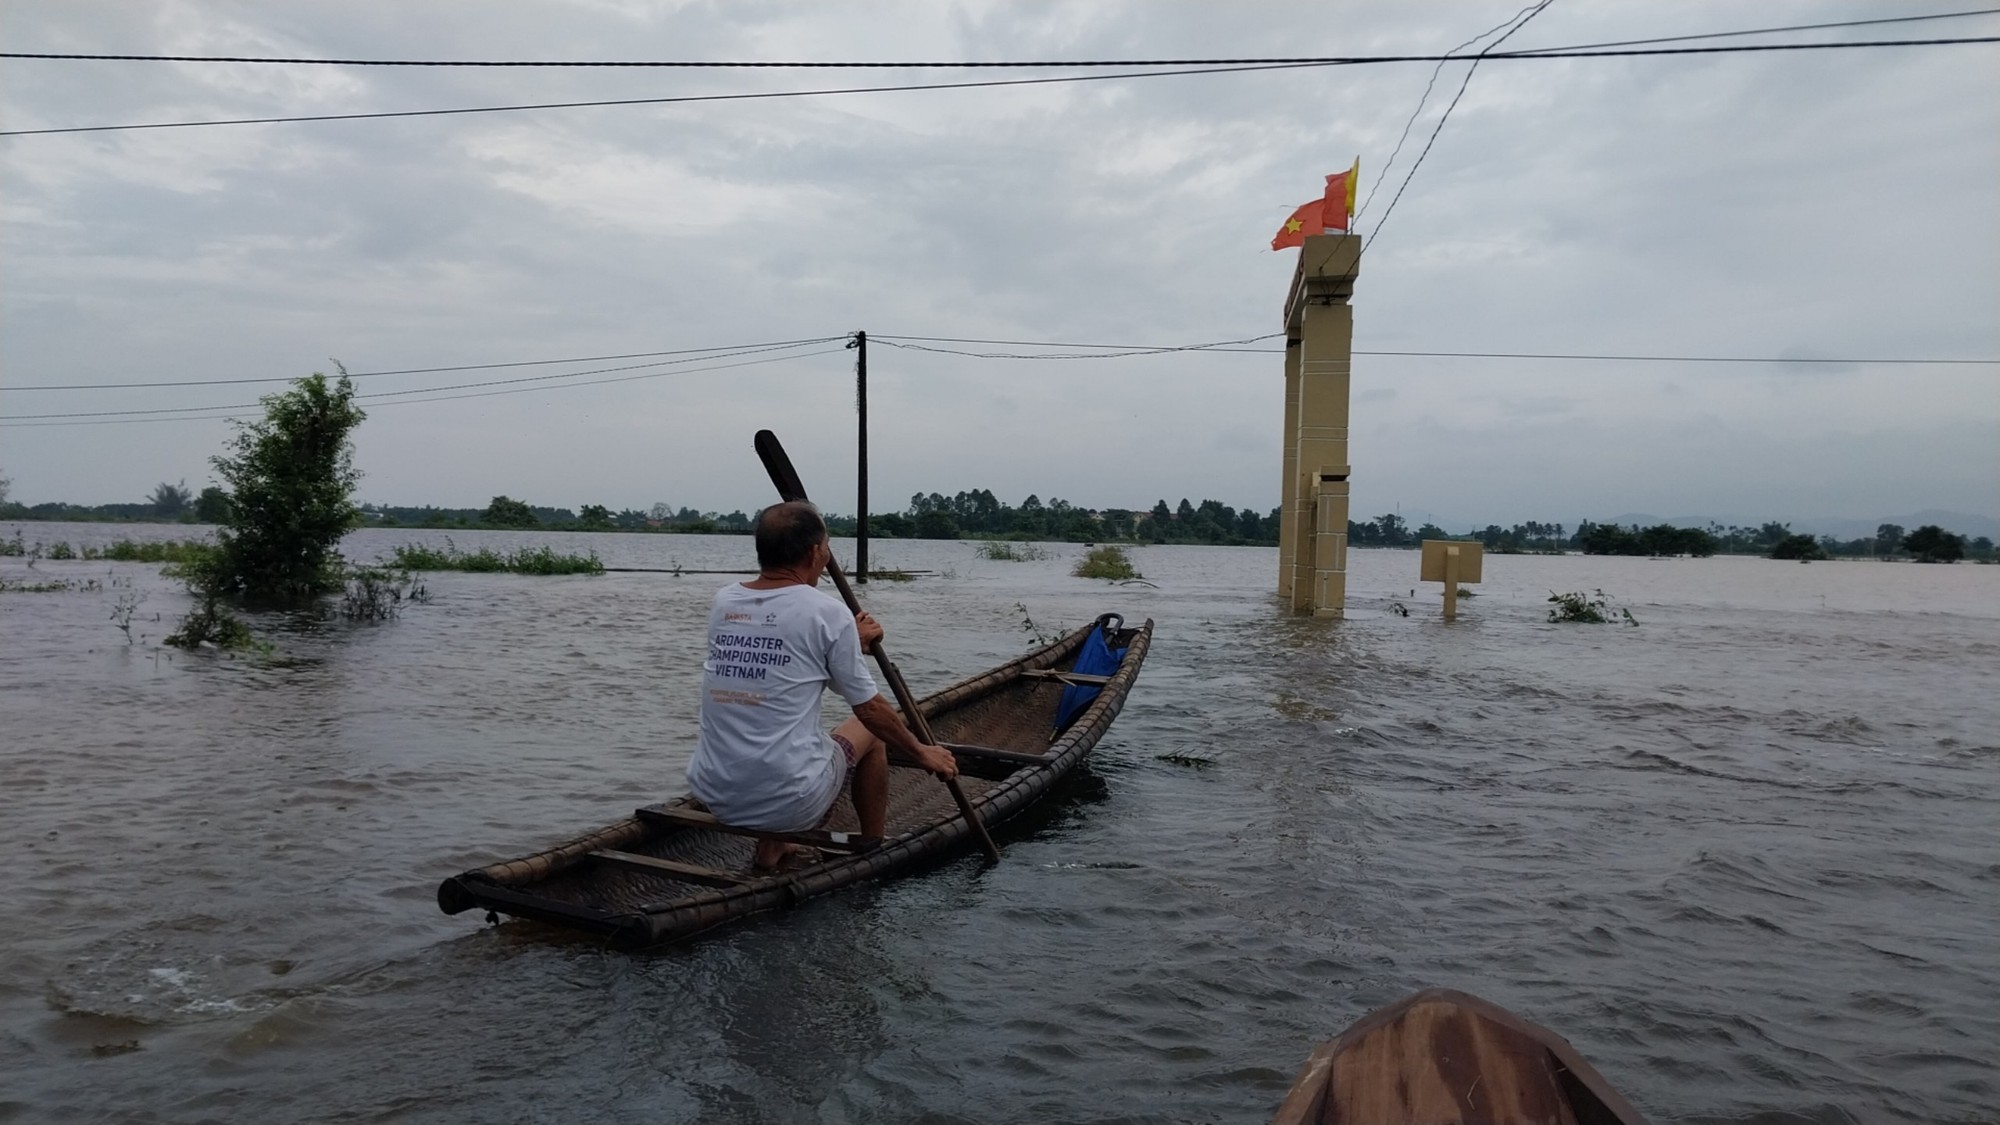 Cận cảnh ngập lụt ở hạ du Thủy điện Hương Điền - Ảnh 13.